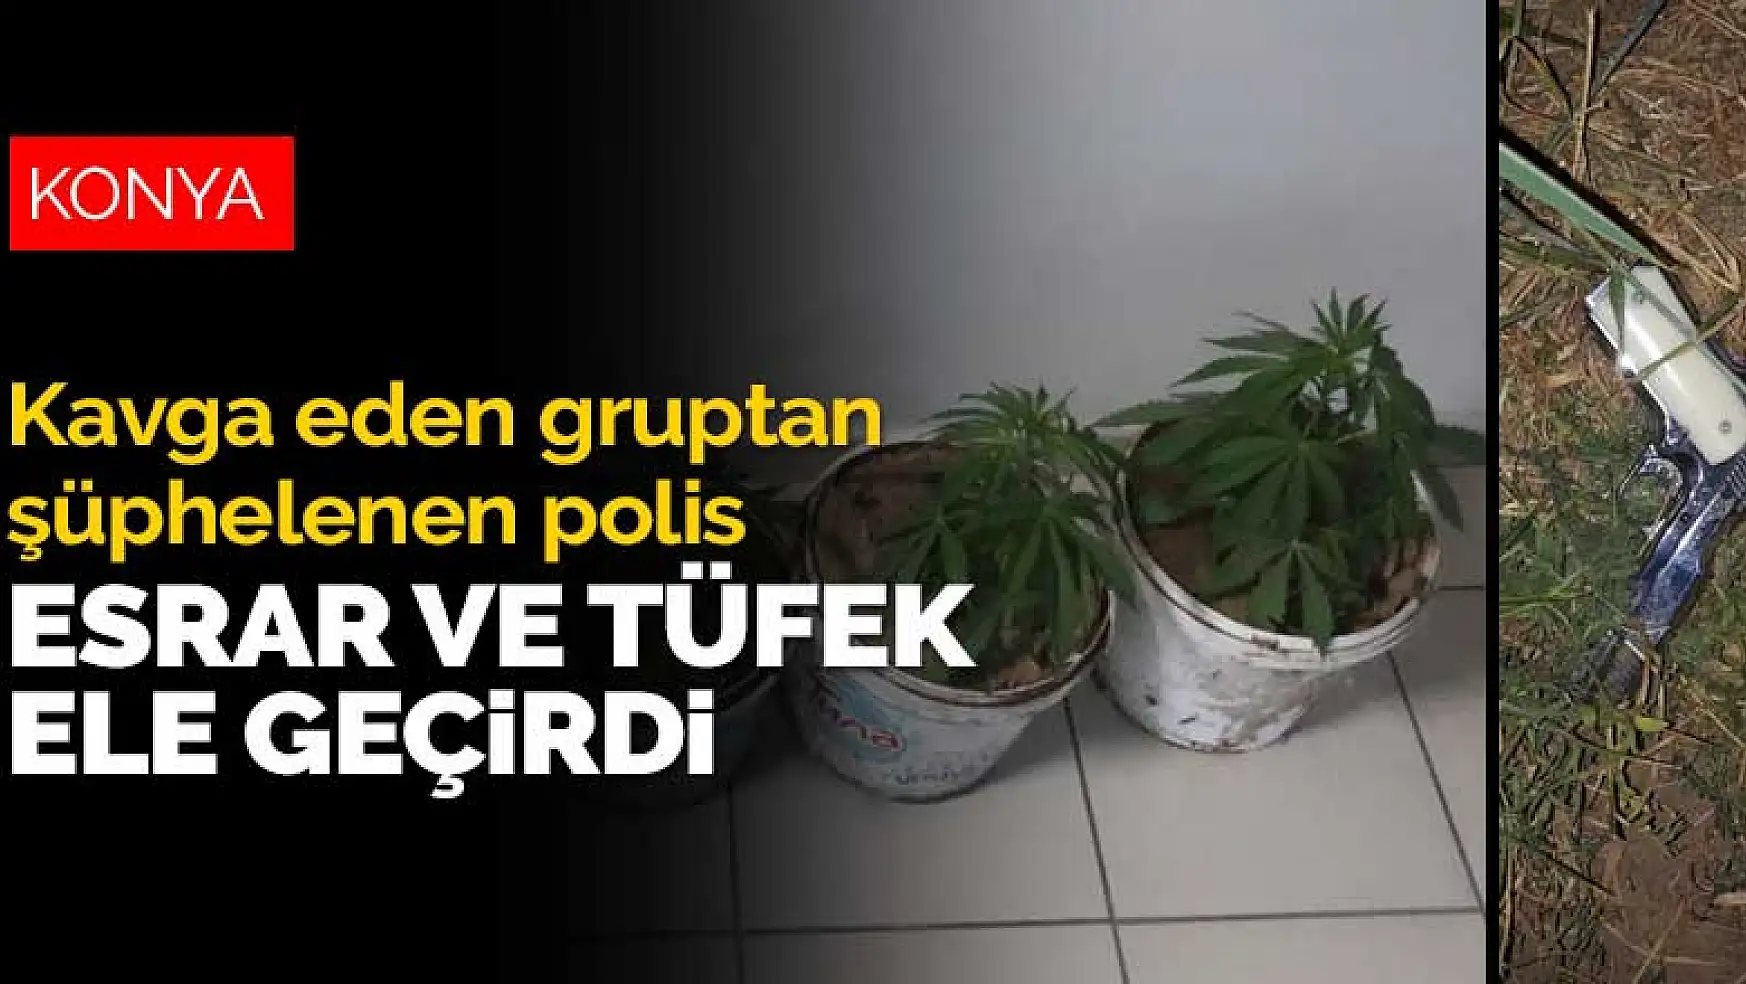 Konya'da kavga eden gruptan şüphelenen polis, 5 saksı esrar ve tüfek ele geçirdi